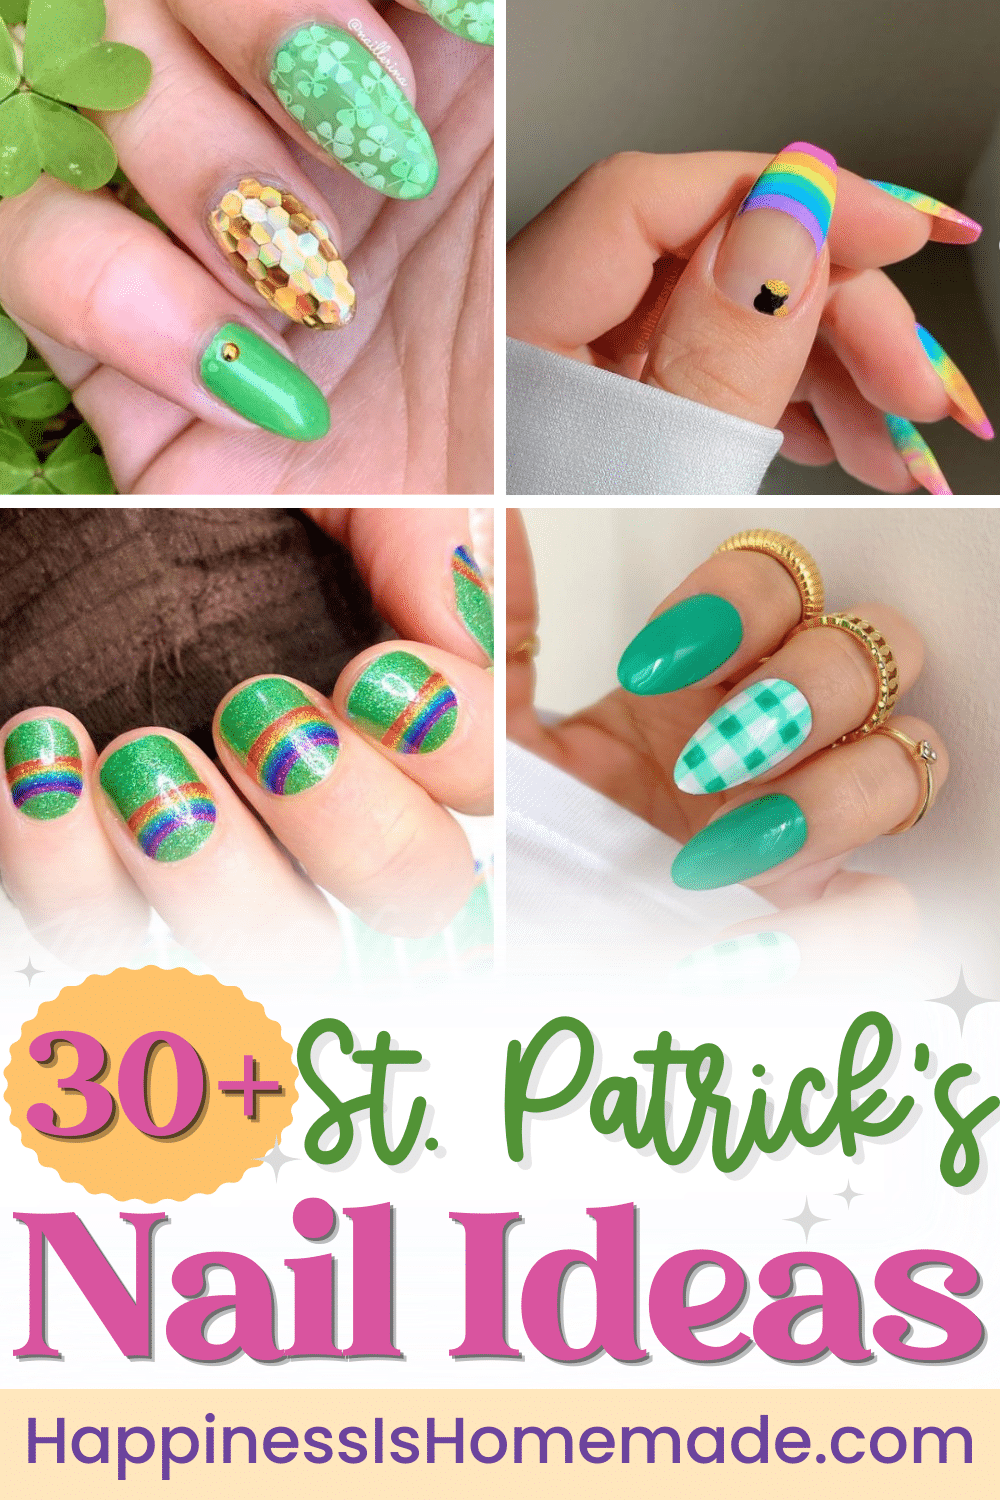 30+ St. Patrick’s Day Nail Ideas